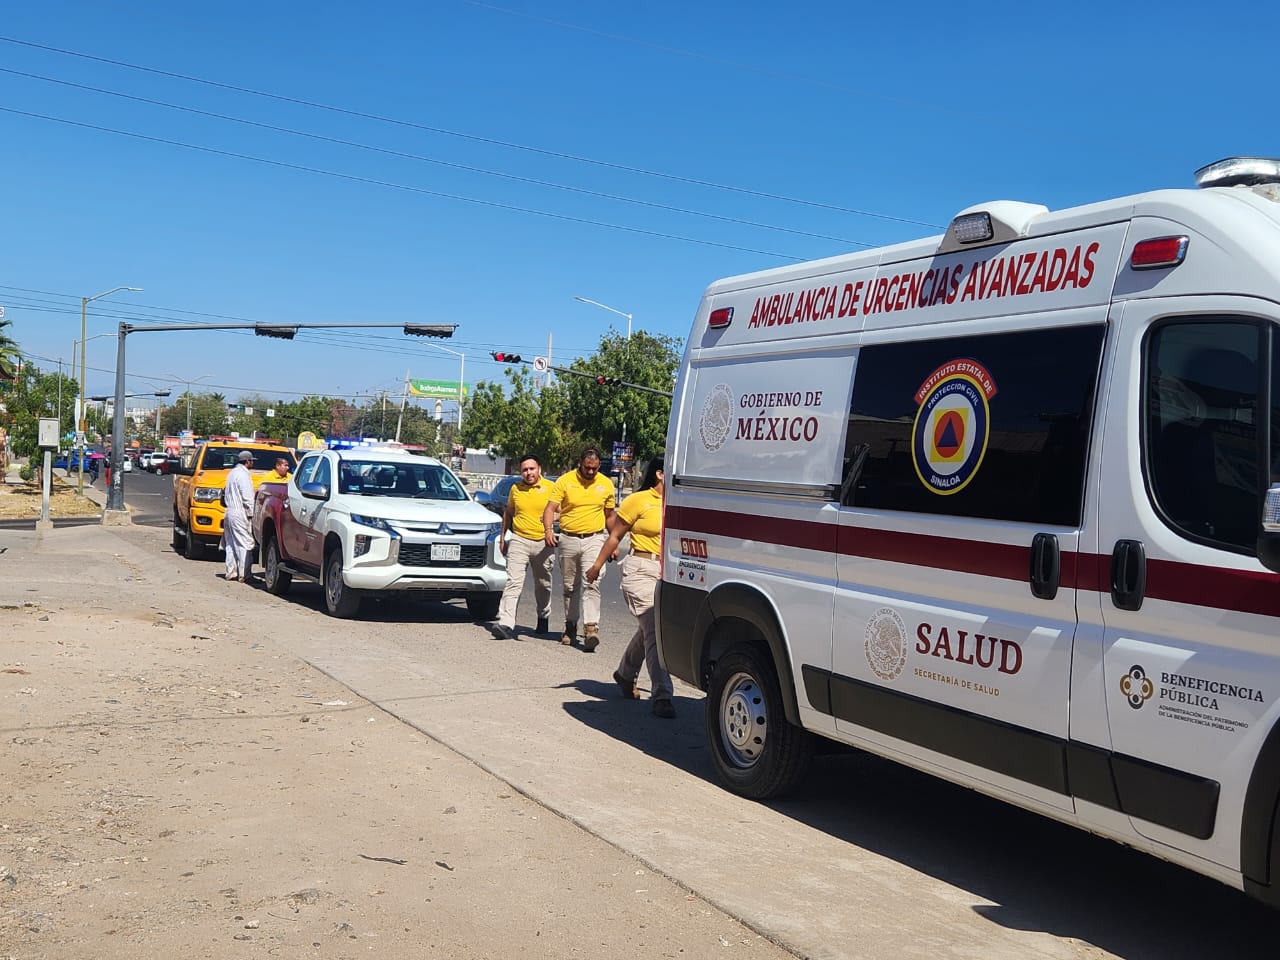 Ambulancia de urgencias avanzadas de salud en Culiacán